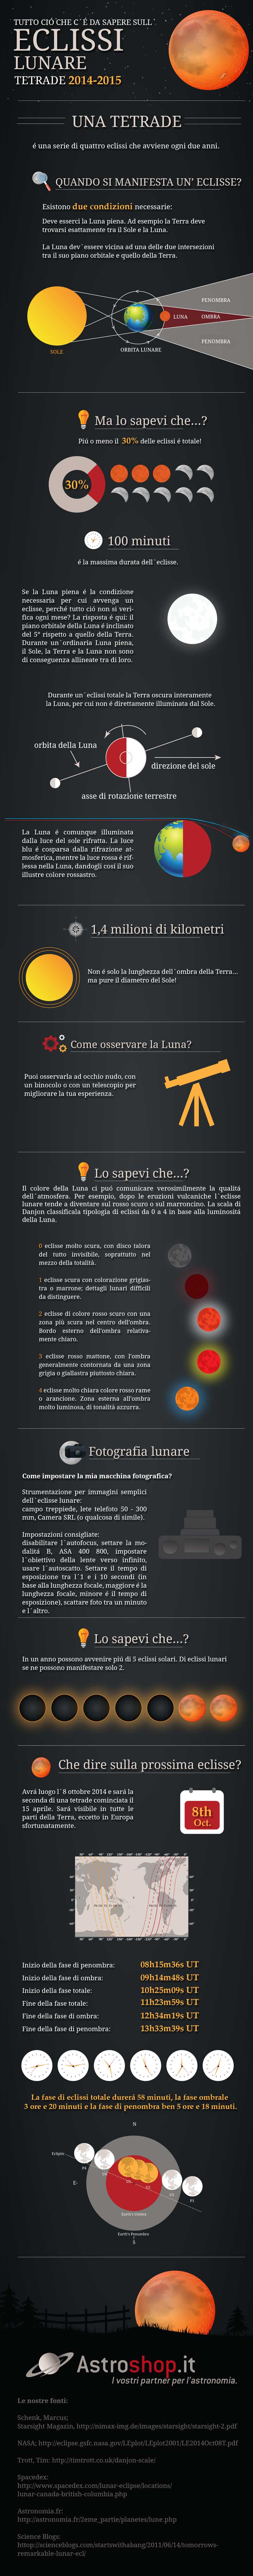 Infographic: understanding lunar eclipses